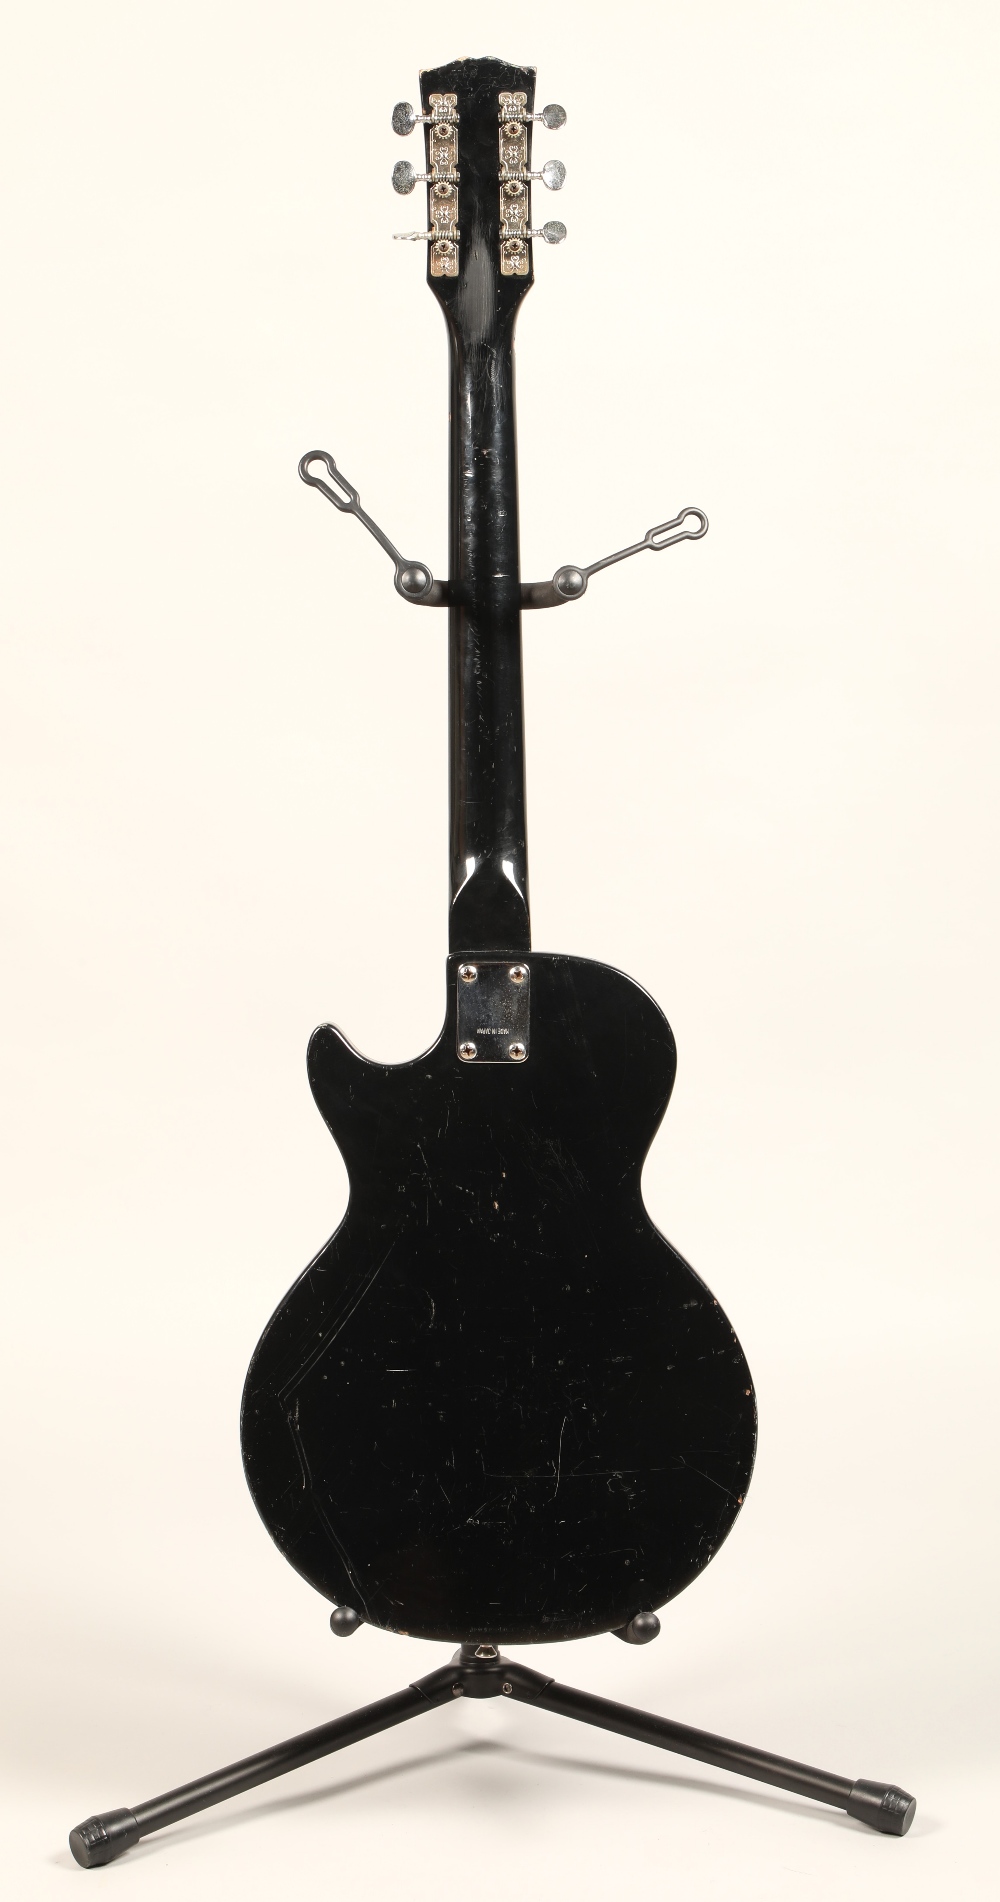 Avon Rose Morris Electric guitar - Image 2 of 2